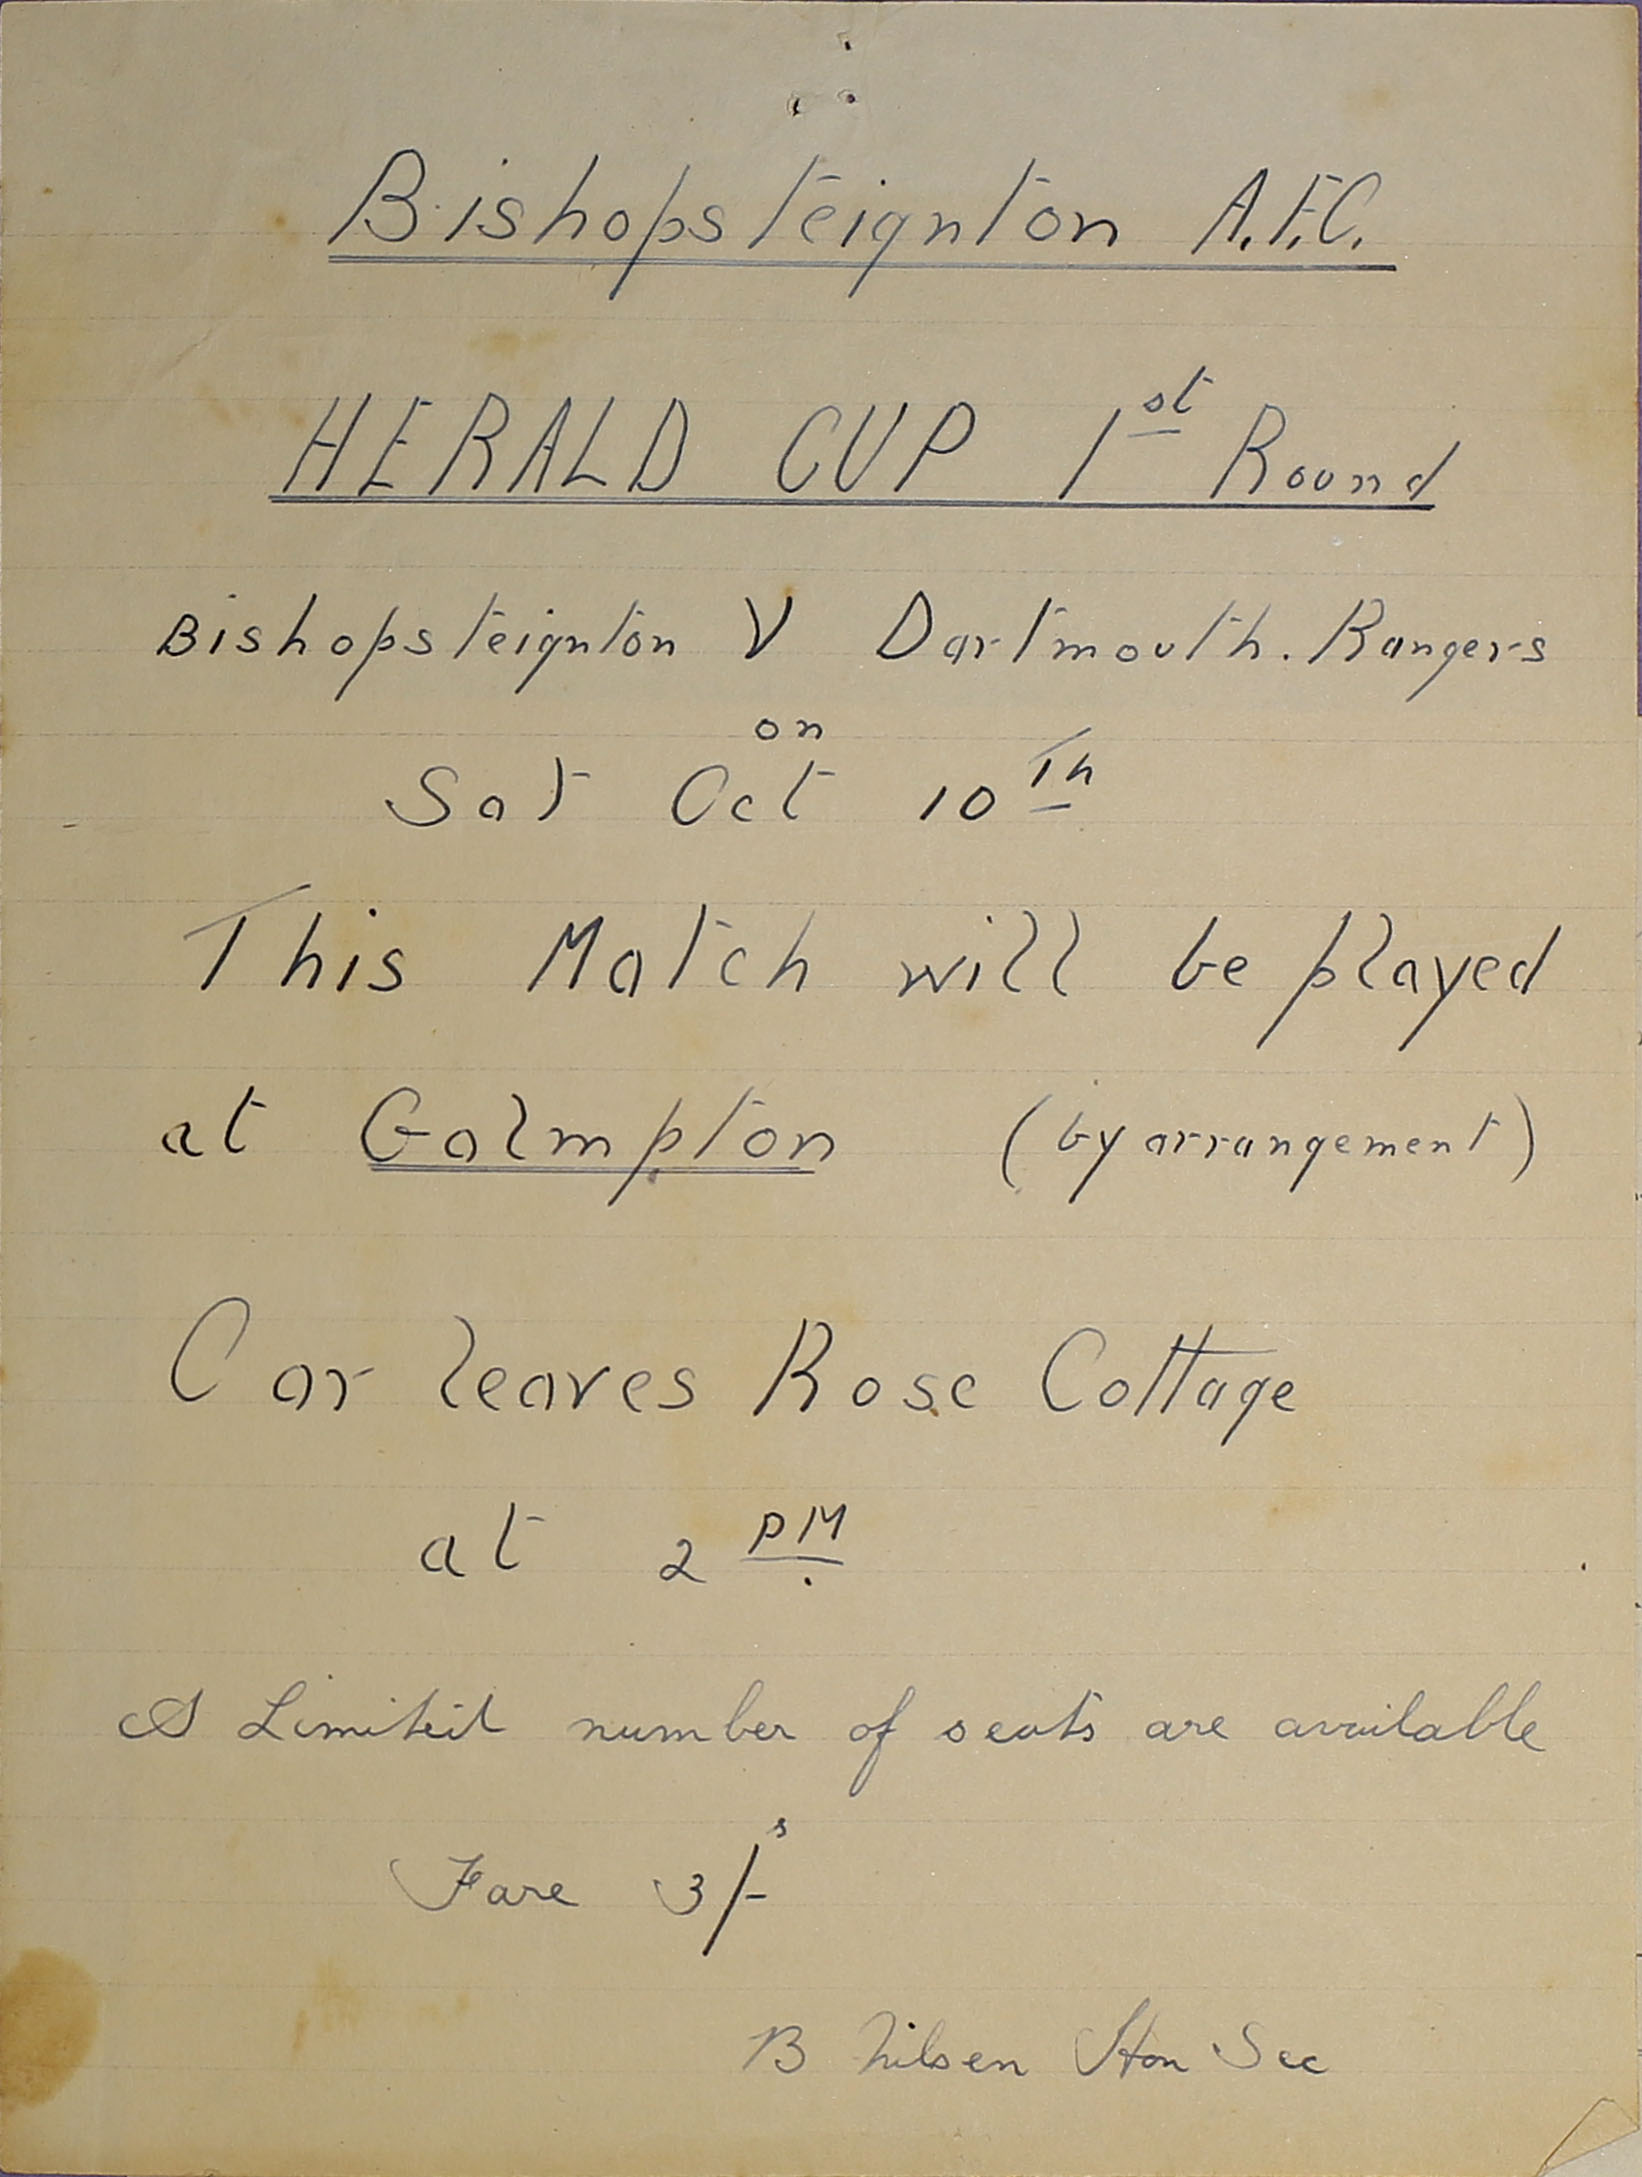 Bishopsteignton A.F.C Herald Cup 1st Round game poster.